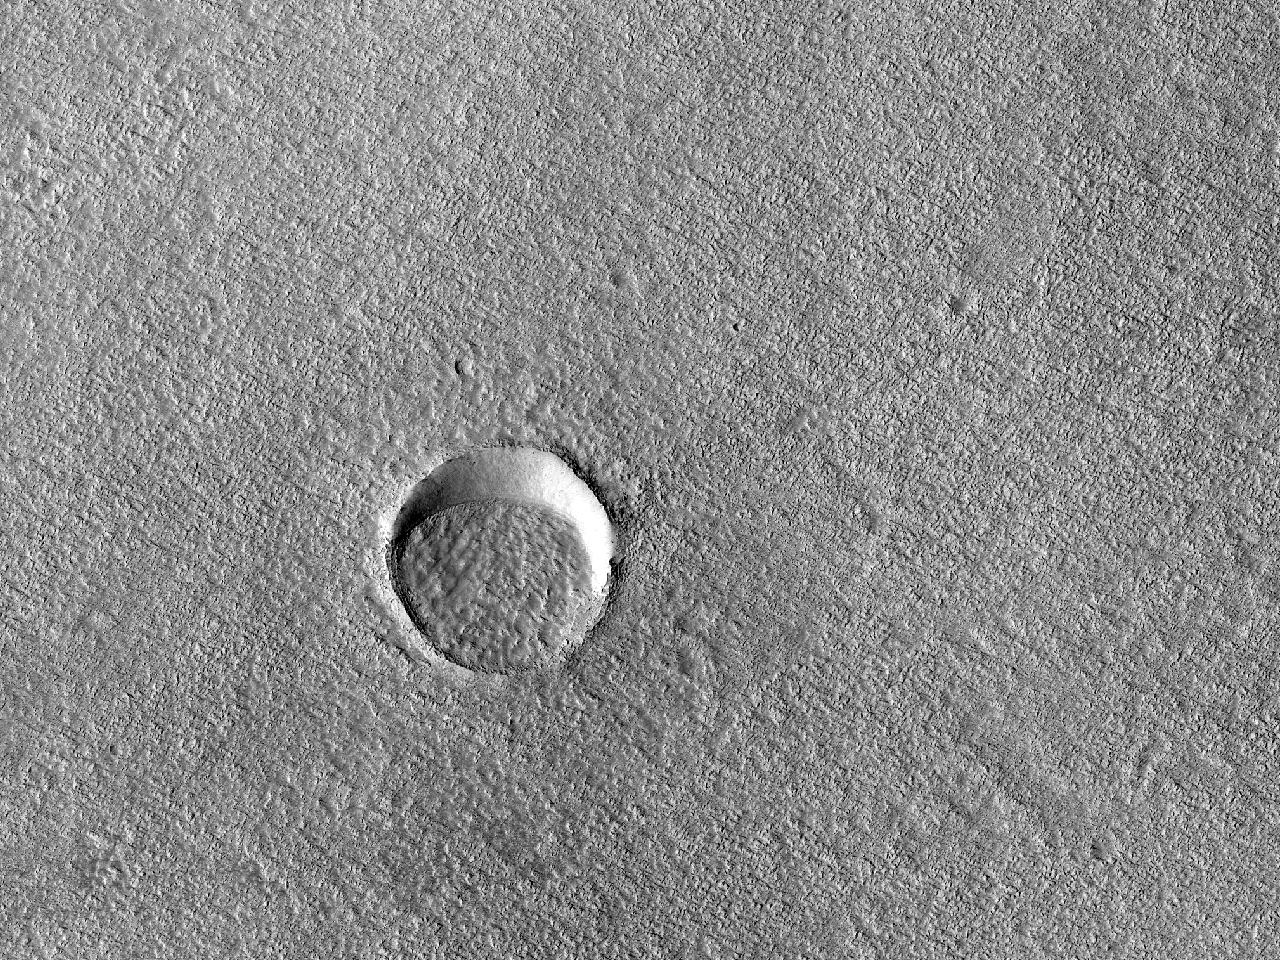 Teilweise mit Ablagerungen gefllter kleiner Krater in Alba Patera